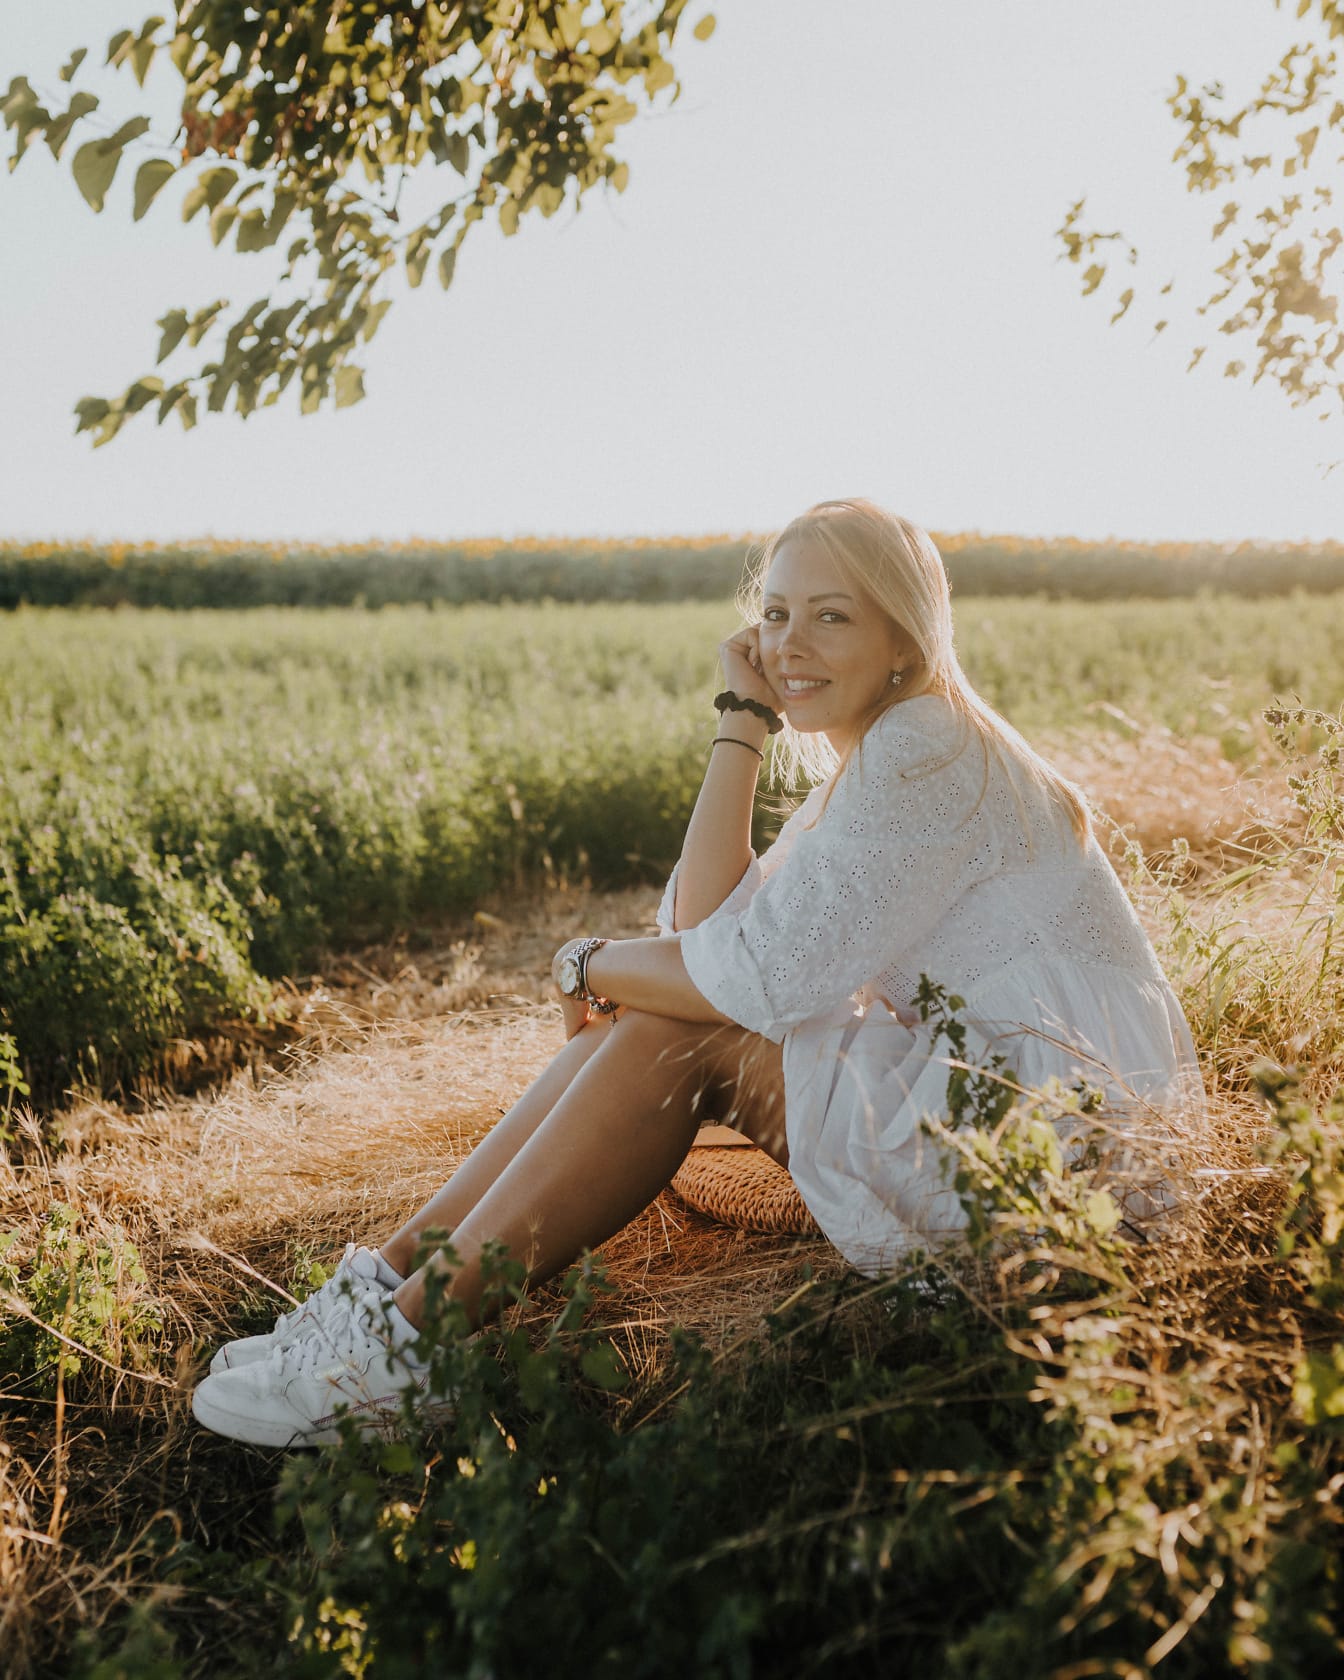 Bella giovane donna sorridente del paese che si siede in un campo in una soleggiata giornata estiva